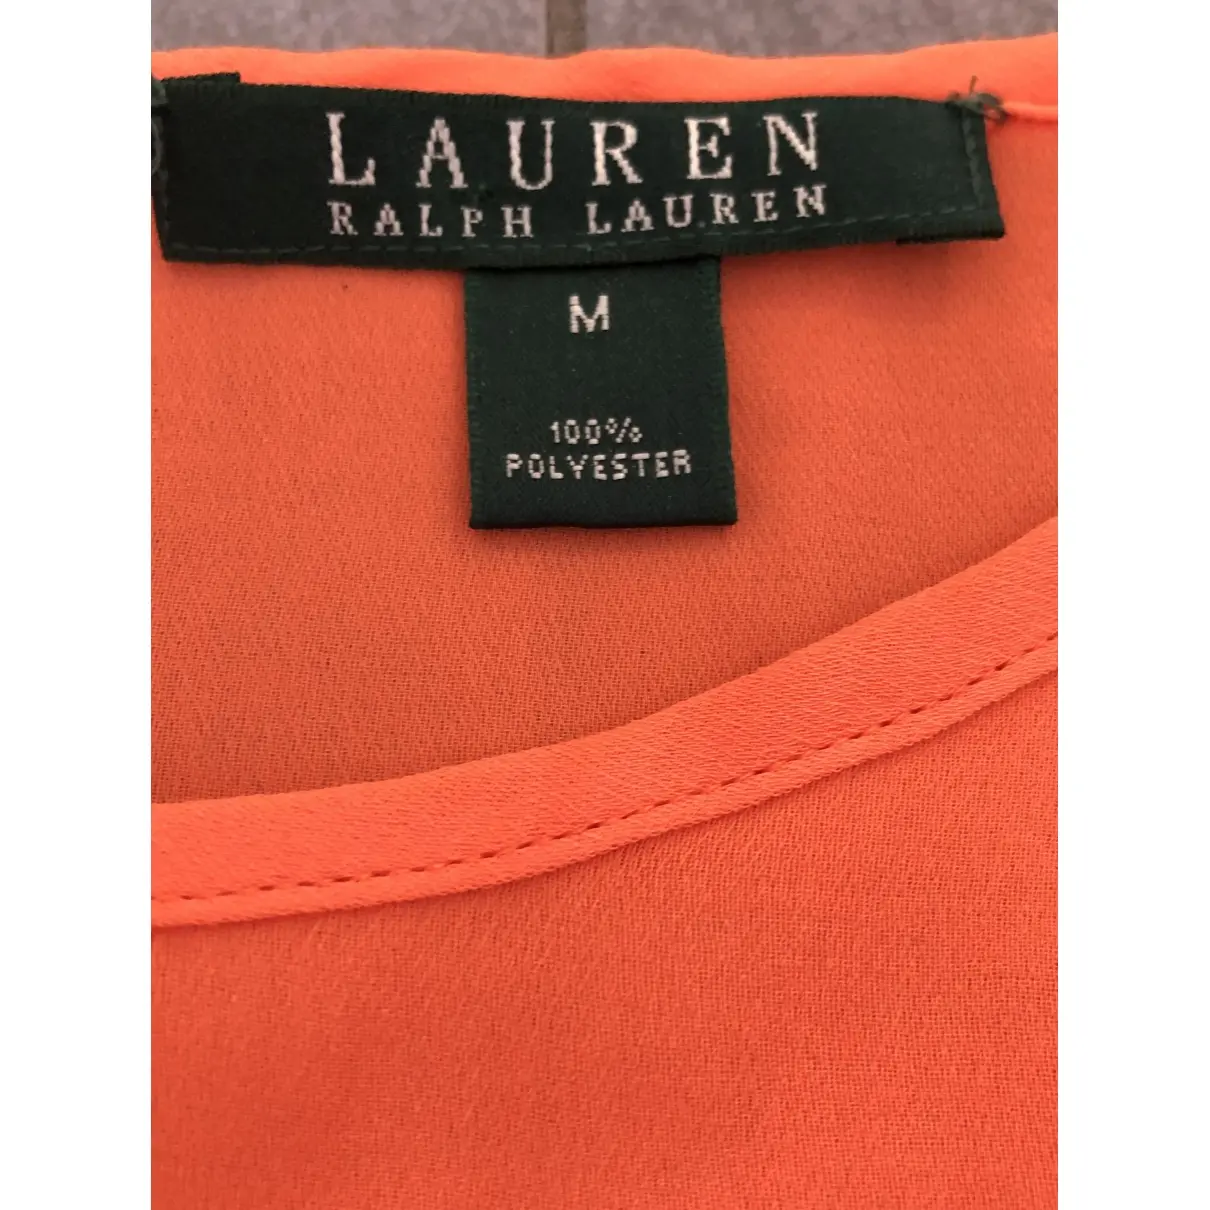 Buy Lauren Ralph Lauren Top online